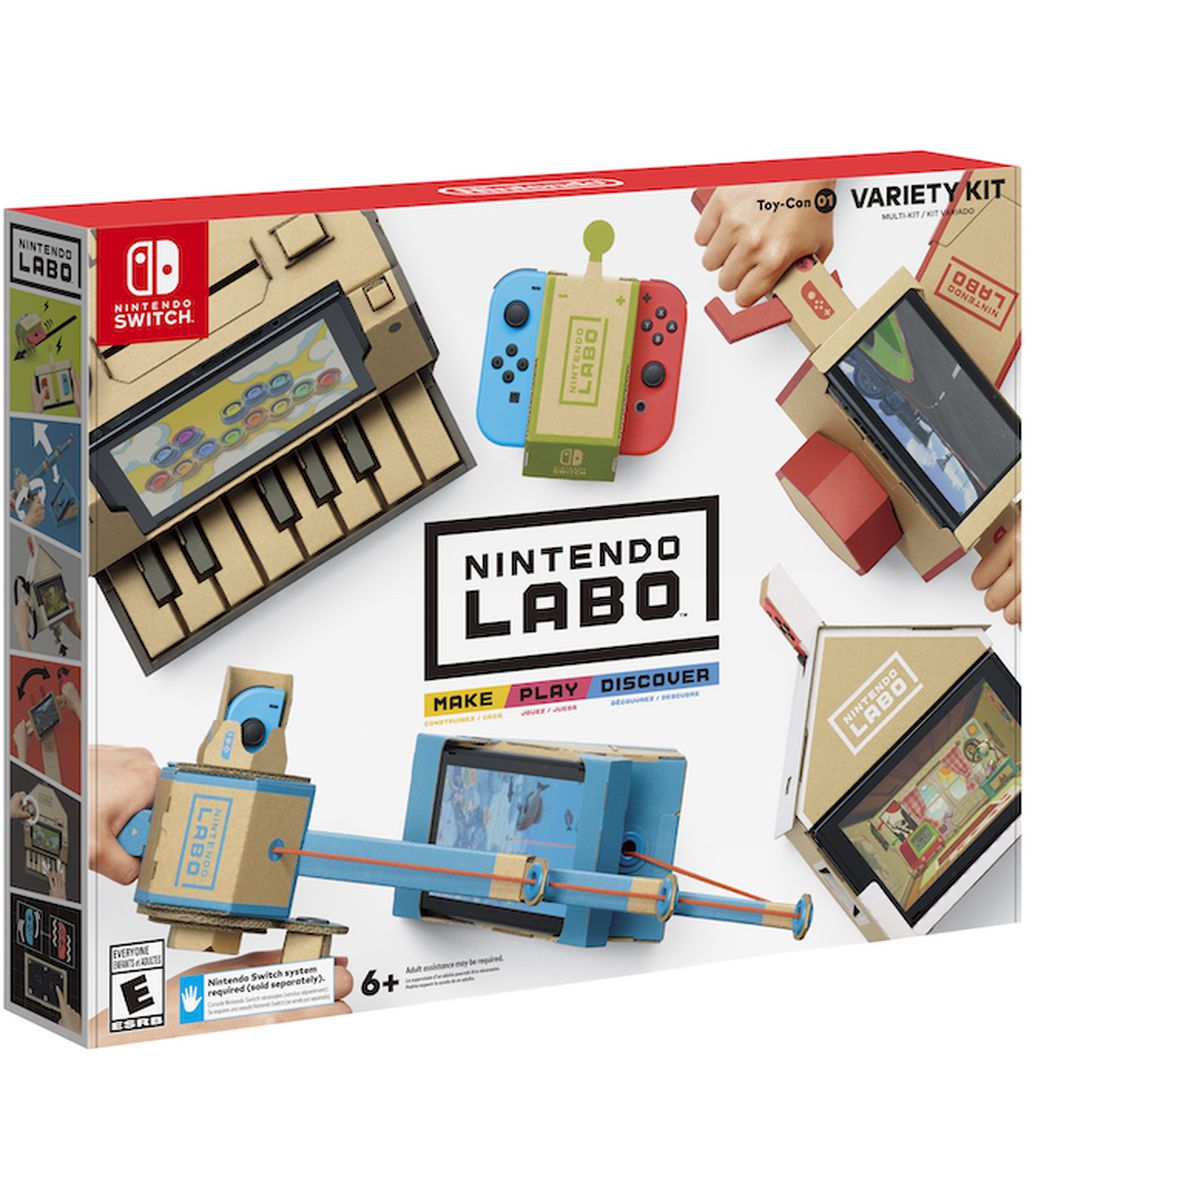 Nintendo Labo pkg 01 Variety Kit